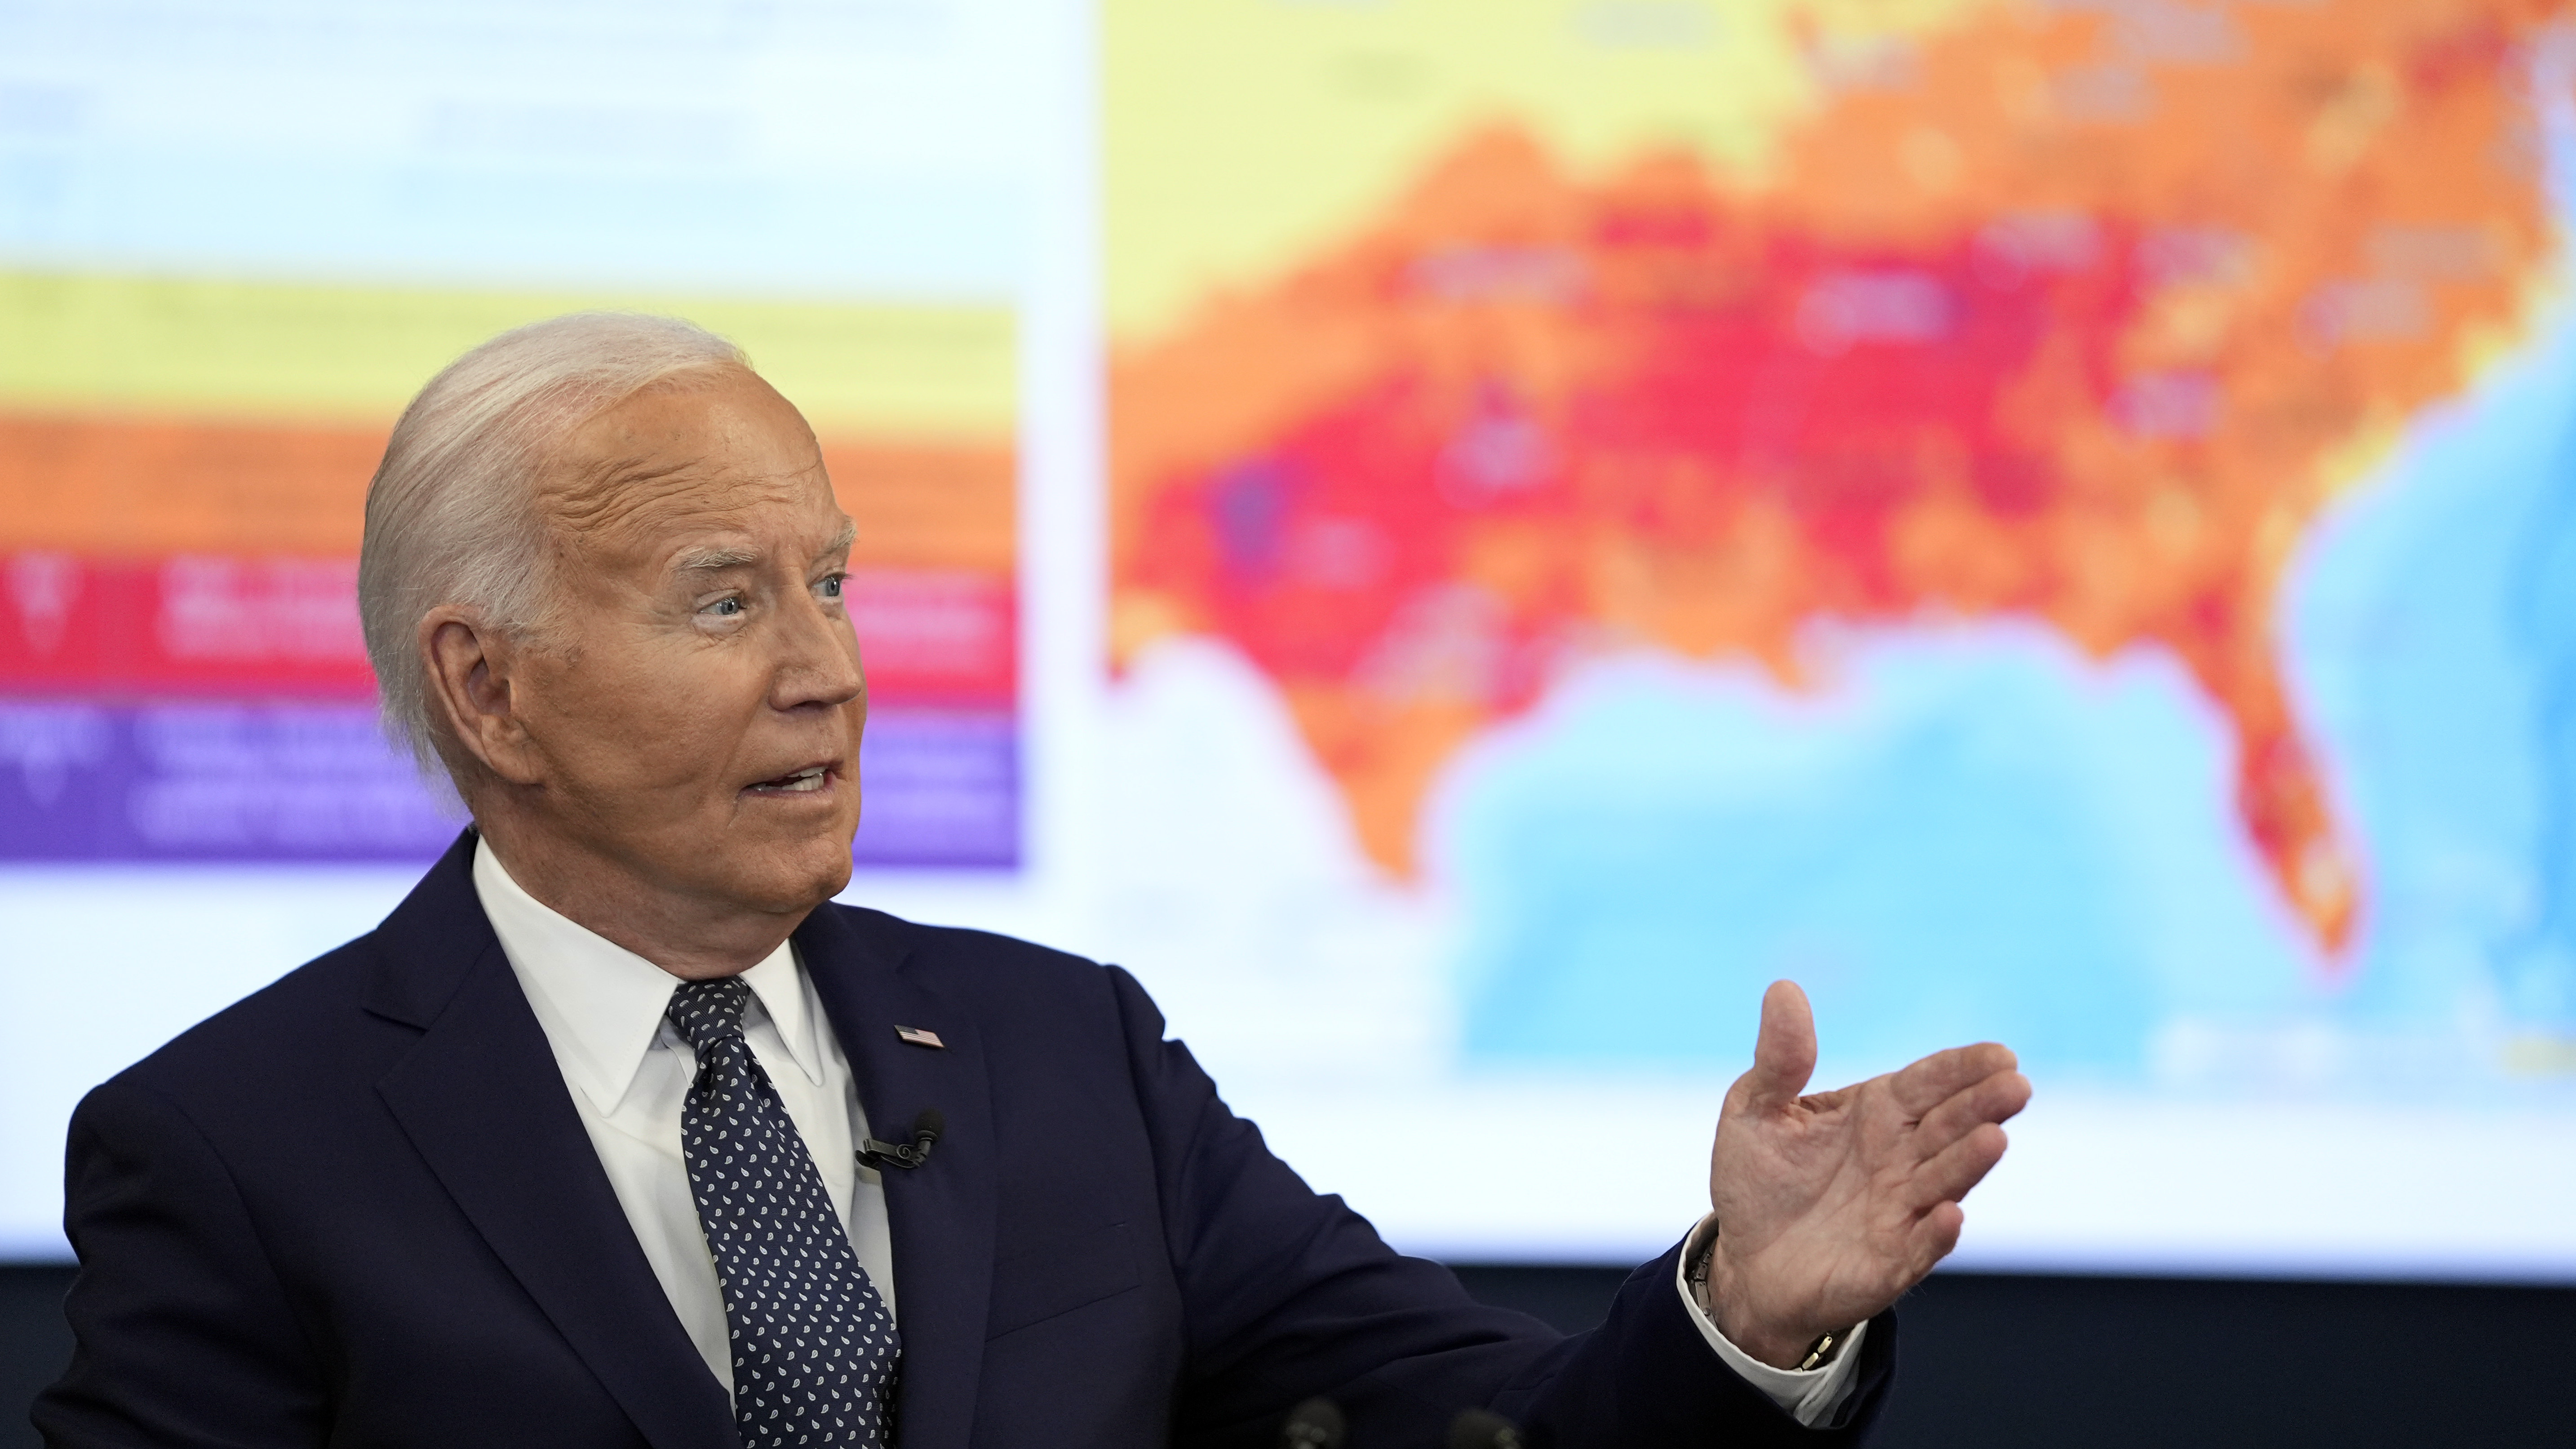 It's hot behind Biden – Sydsvenskan